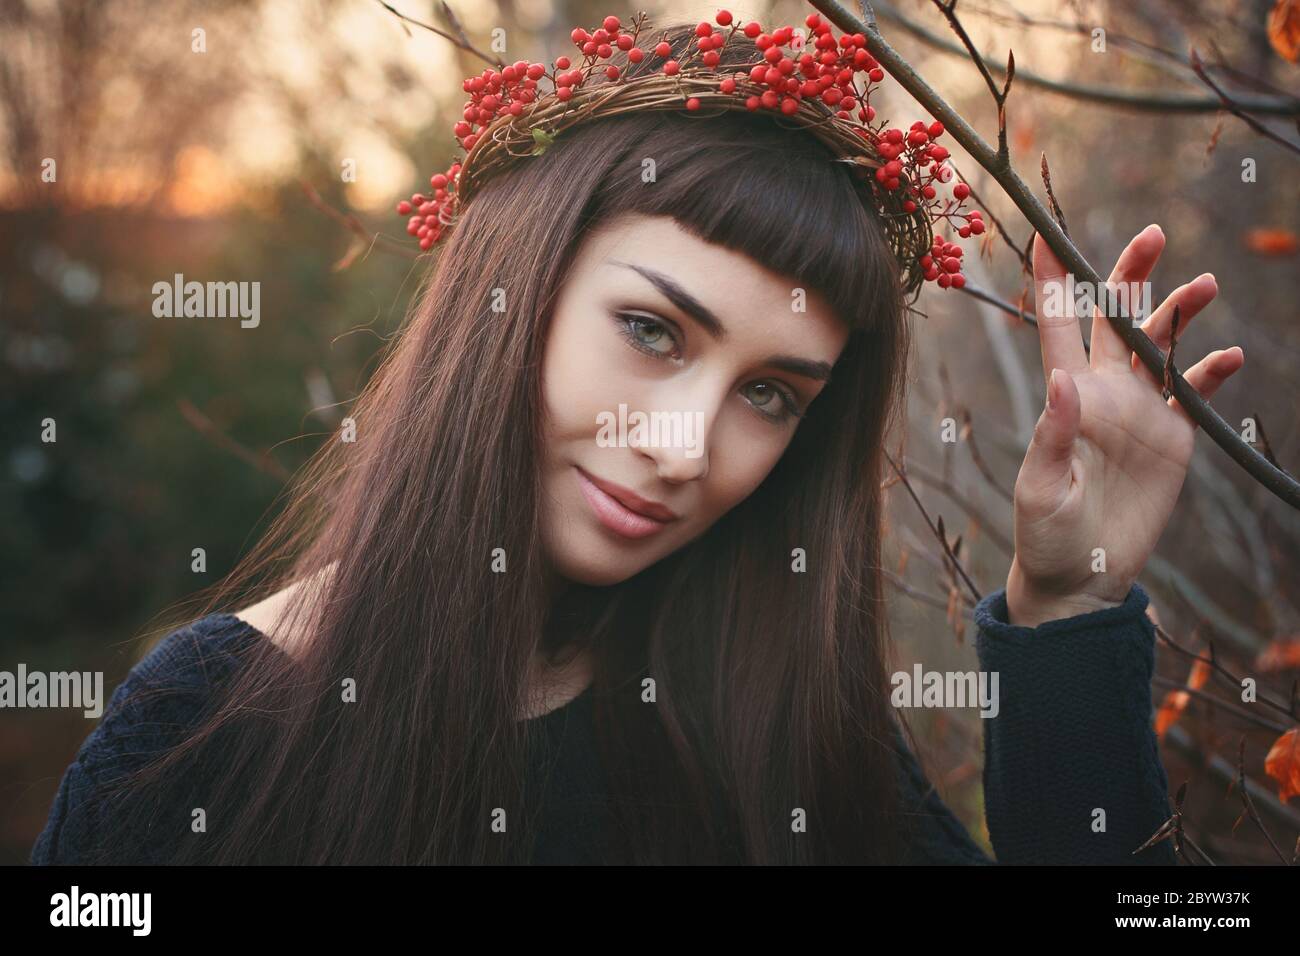 Winterportrait einer schönen jungen Frau. Saisonal und romantisch Stockfoto